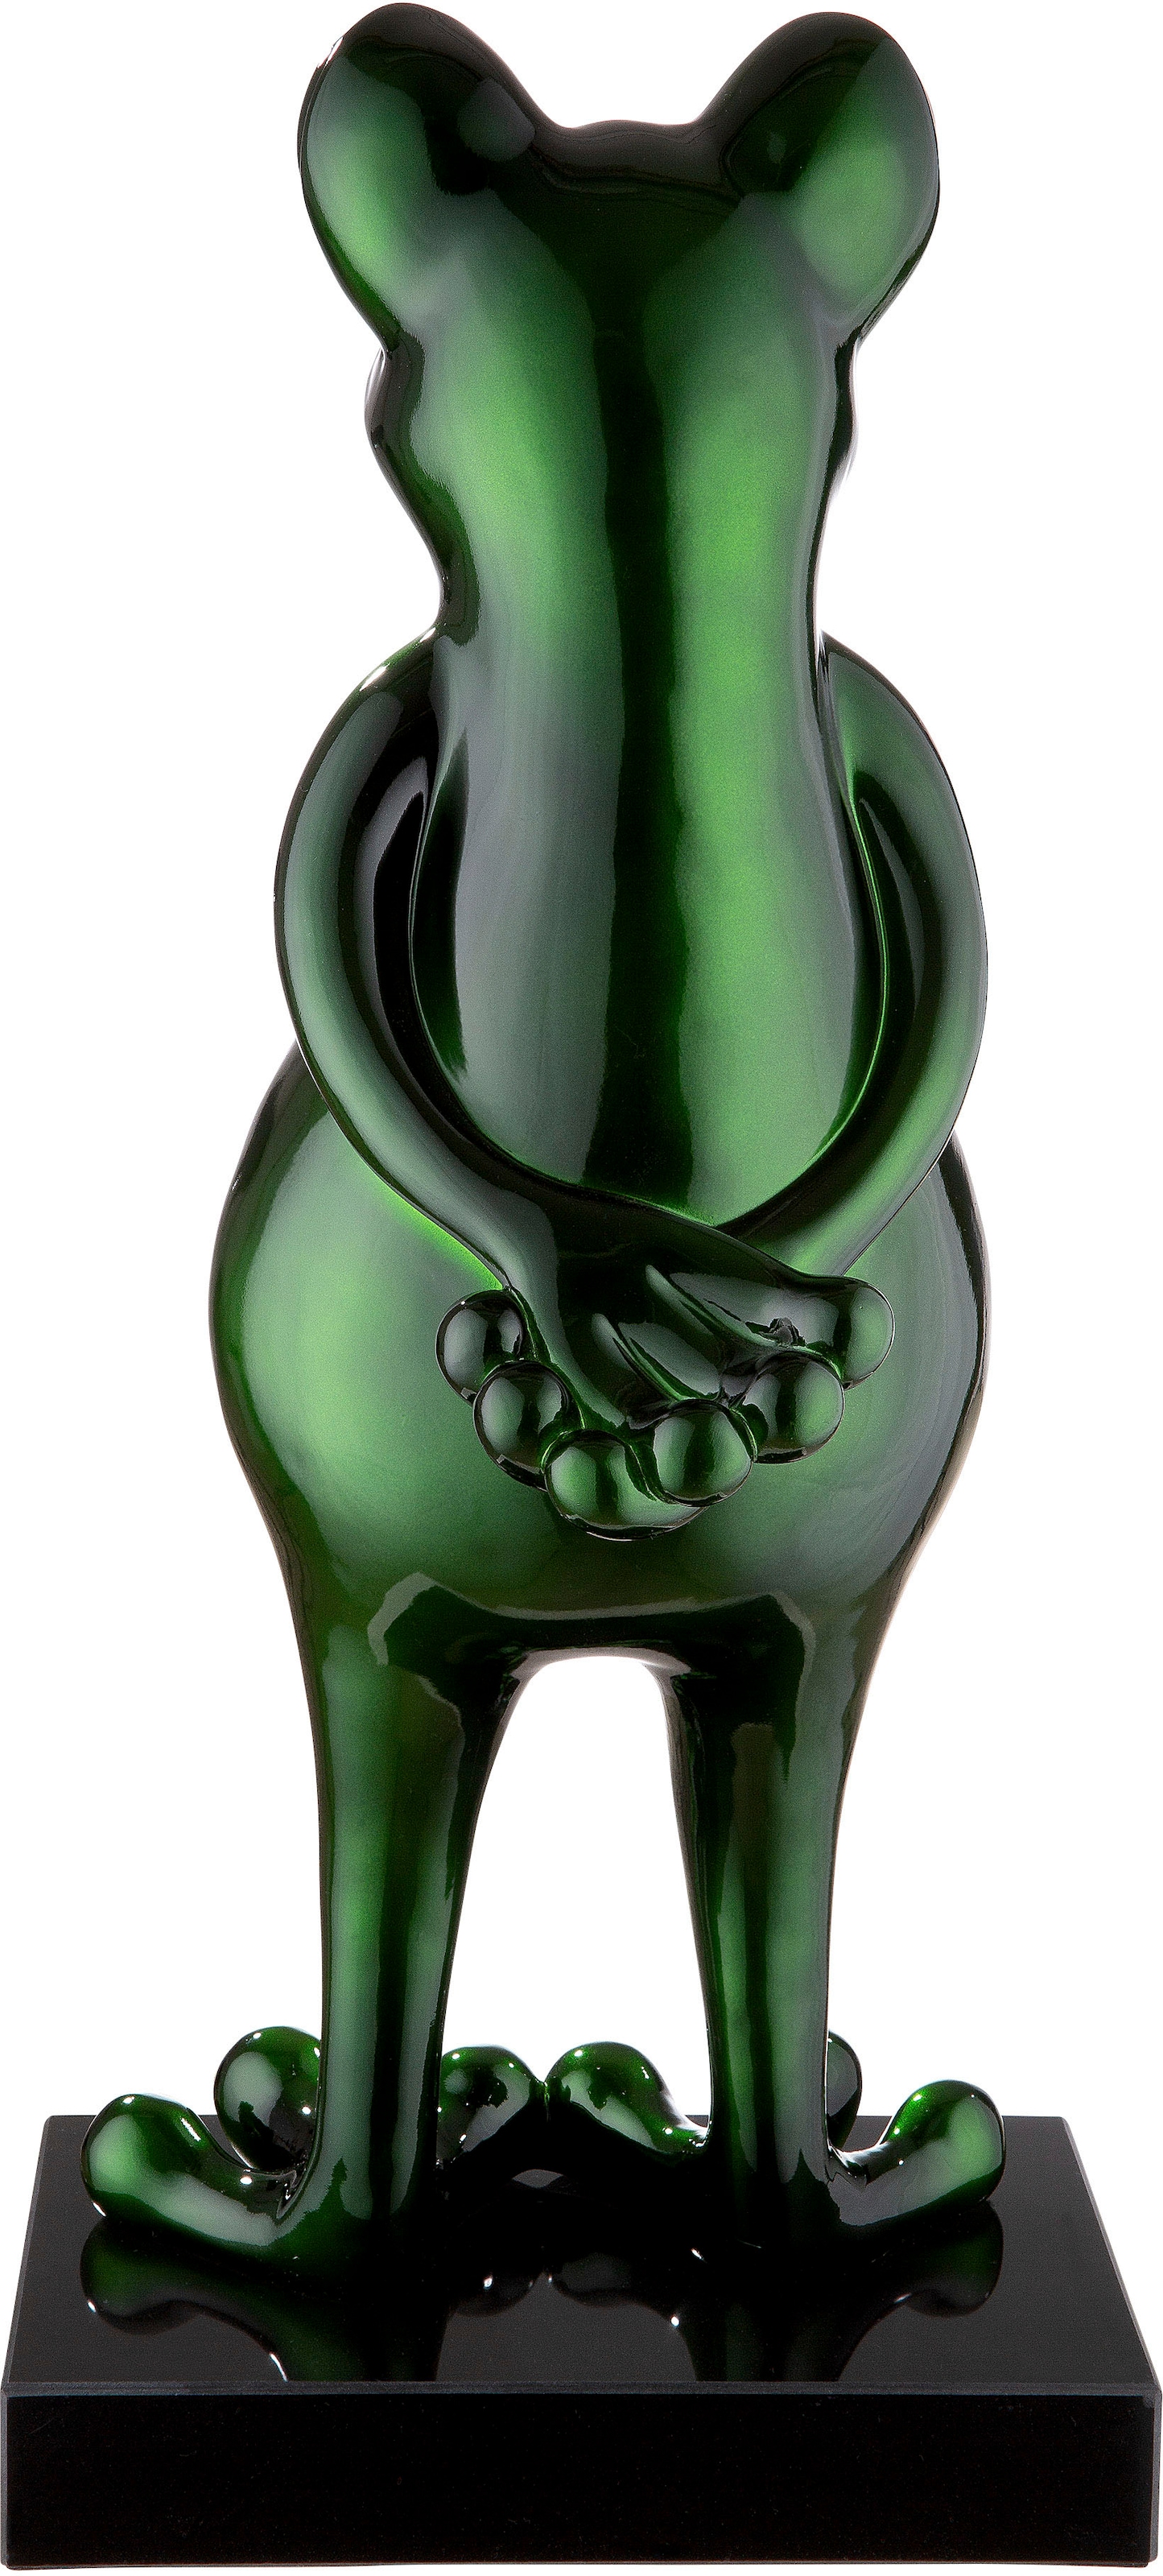 Casablanca by Gilde Tierfigur »Skulptur Raten kaufen auf Marmorbase auf Frog«